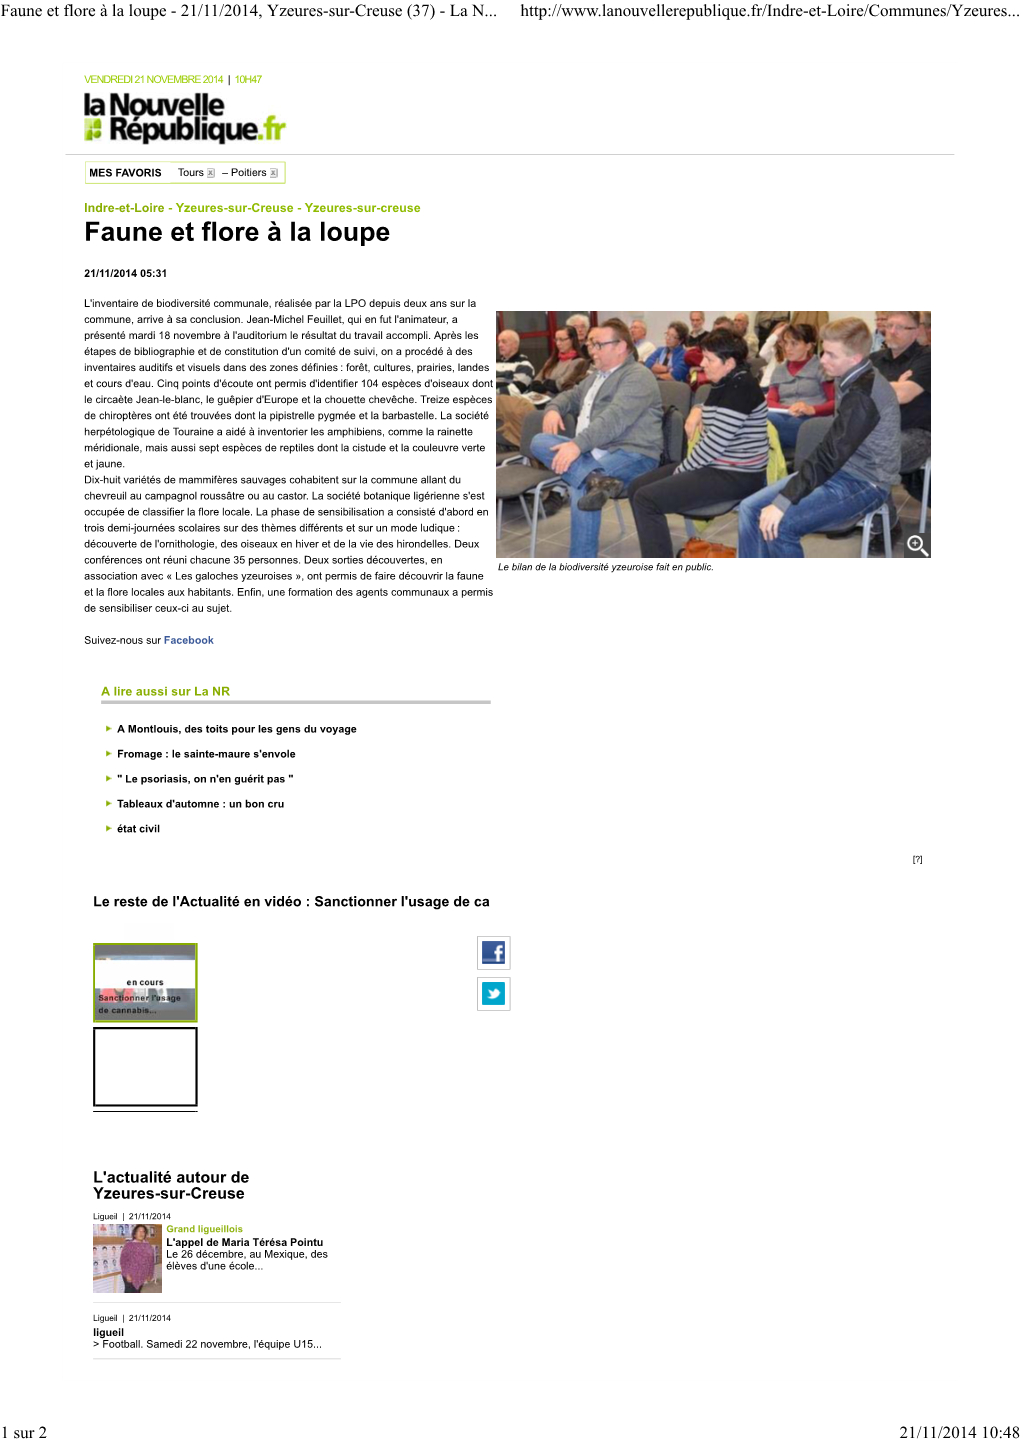 21/11/2014, Yzeures-Sur-Creuse (37) - La N